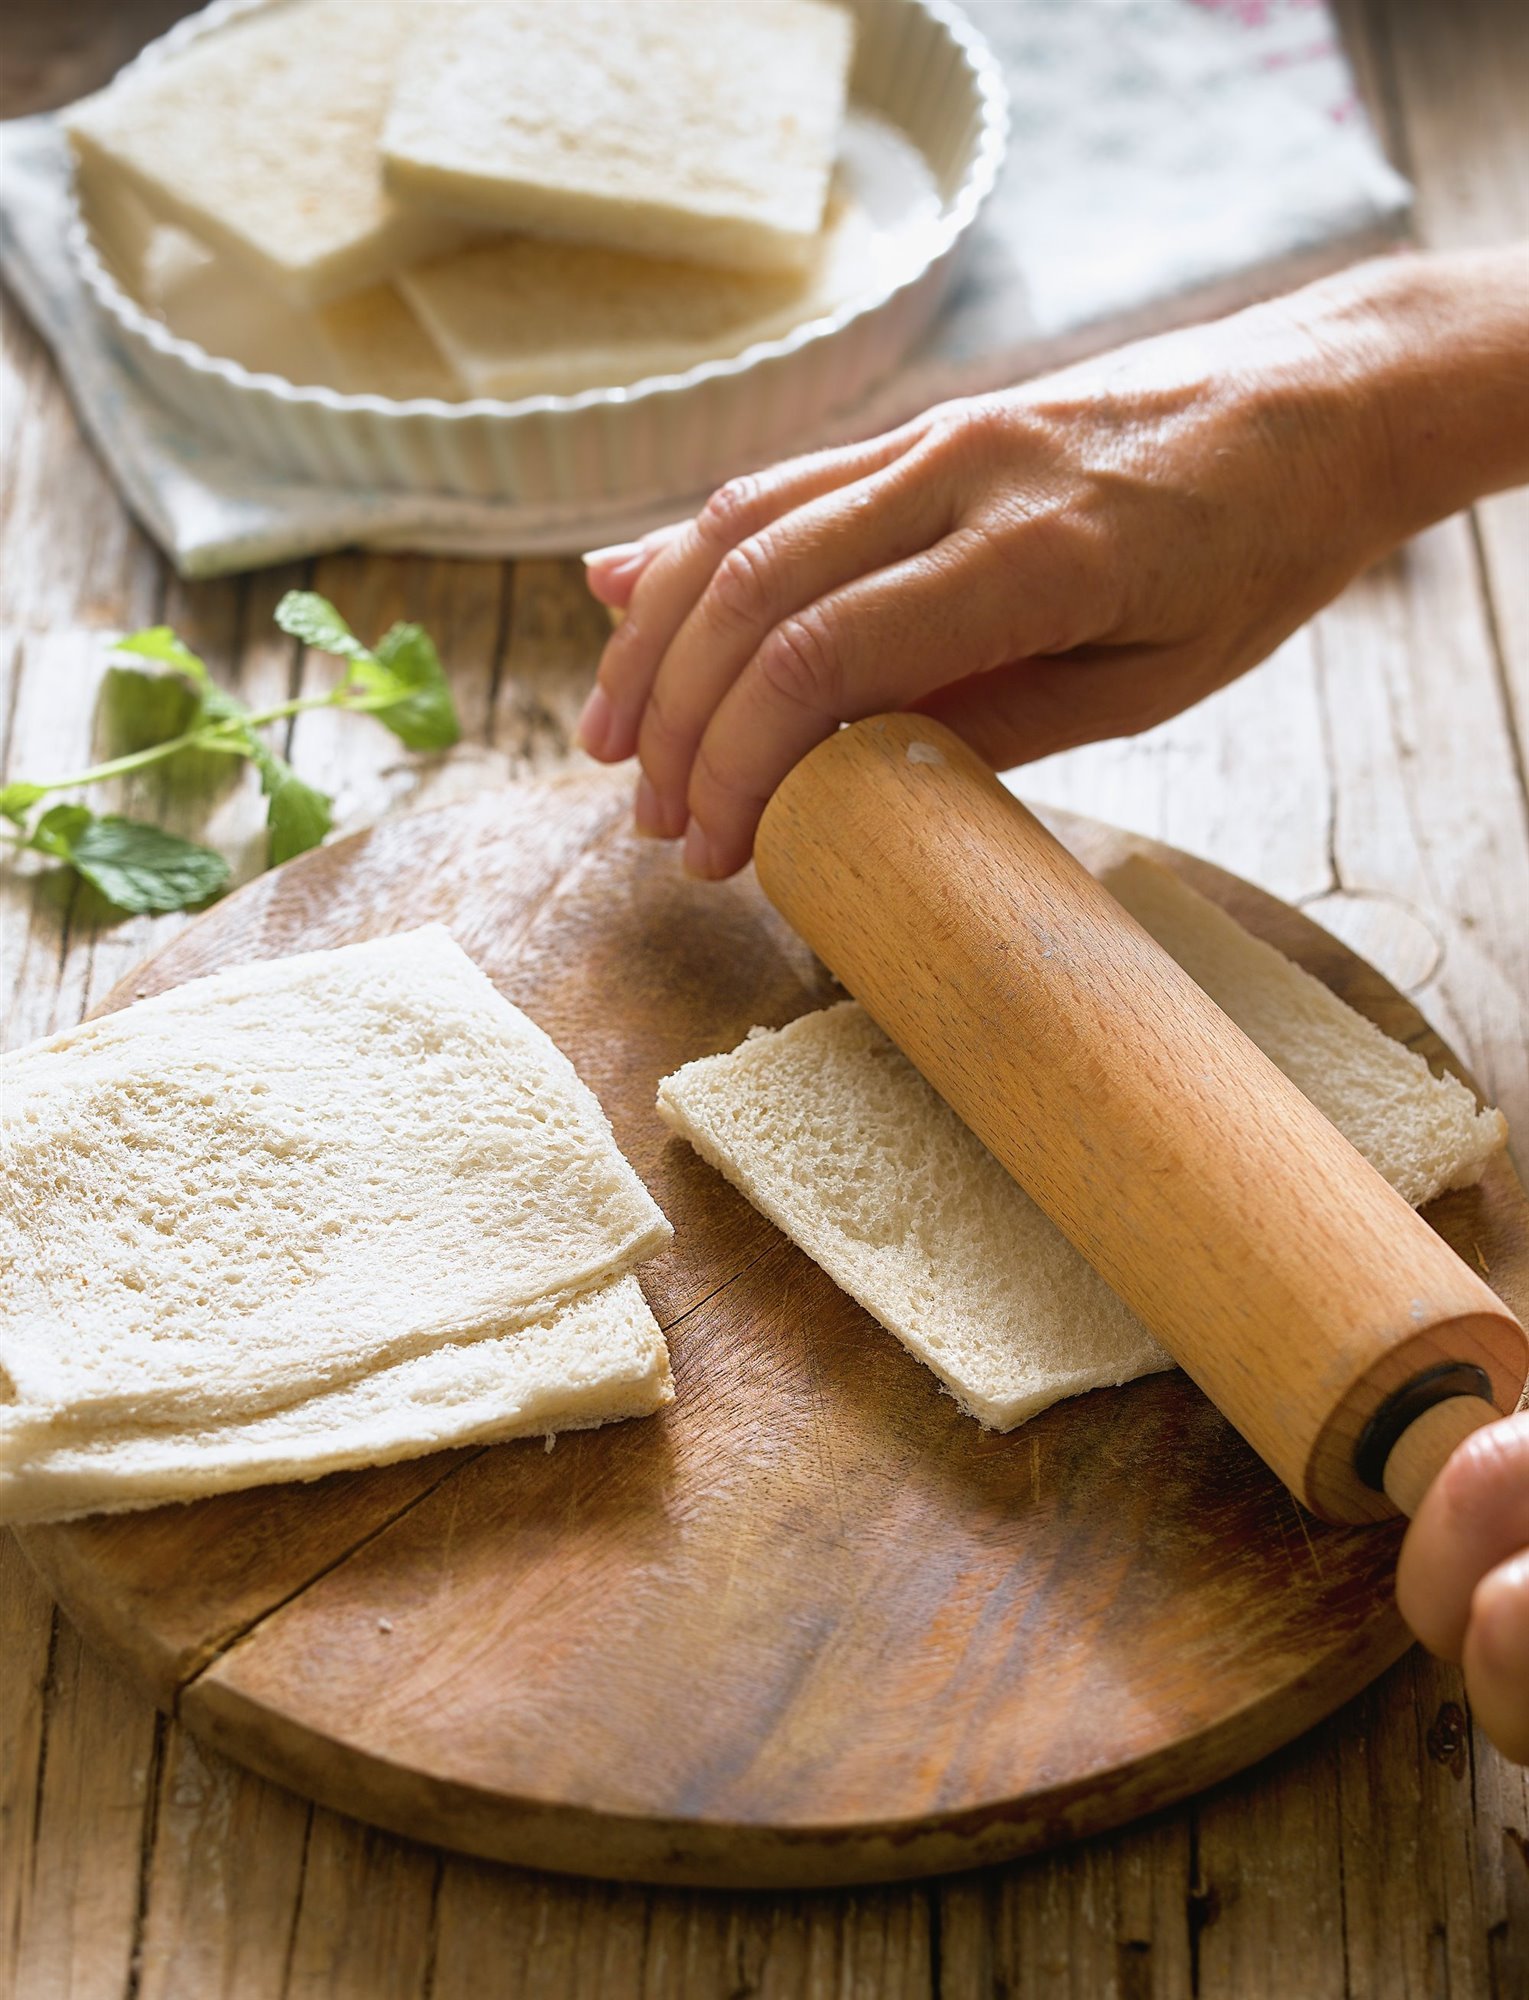 1. Aplana el pan con un rodillo